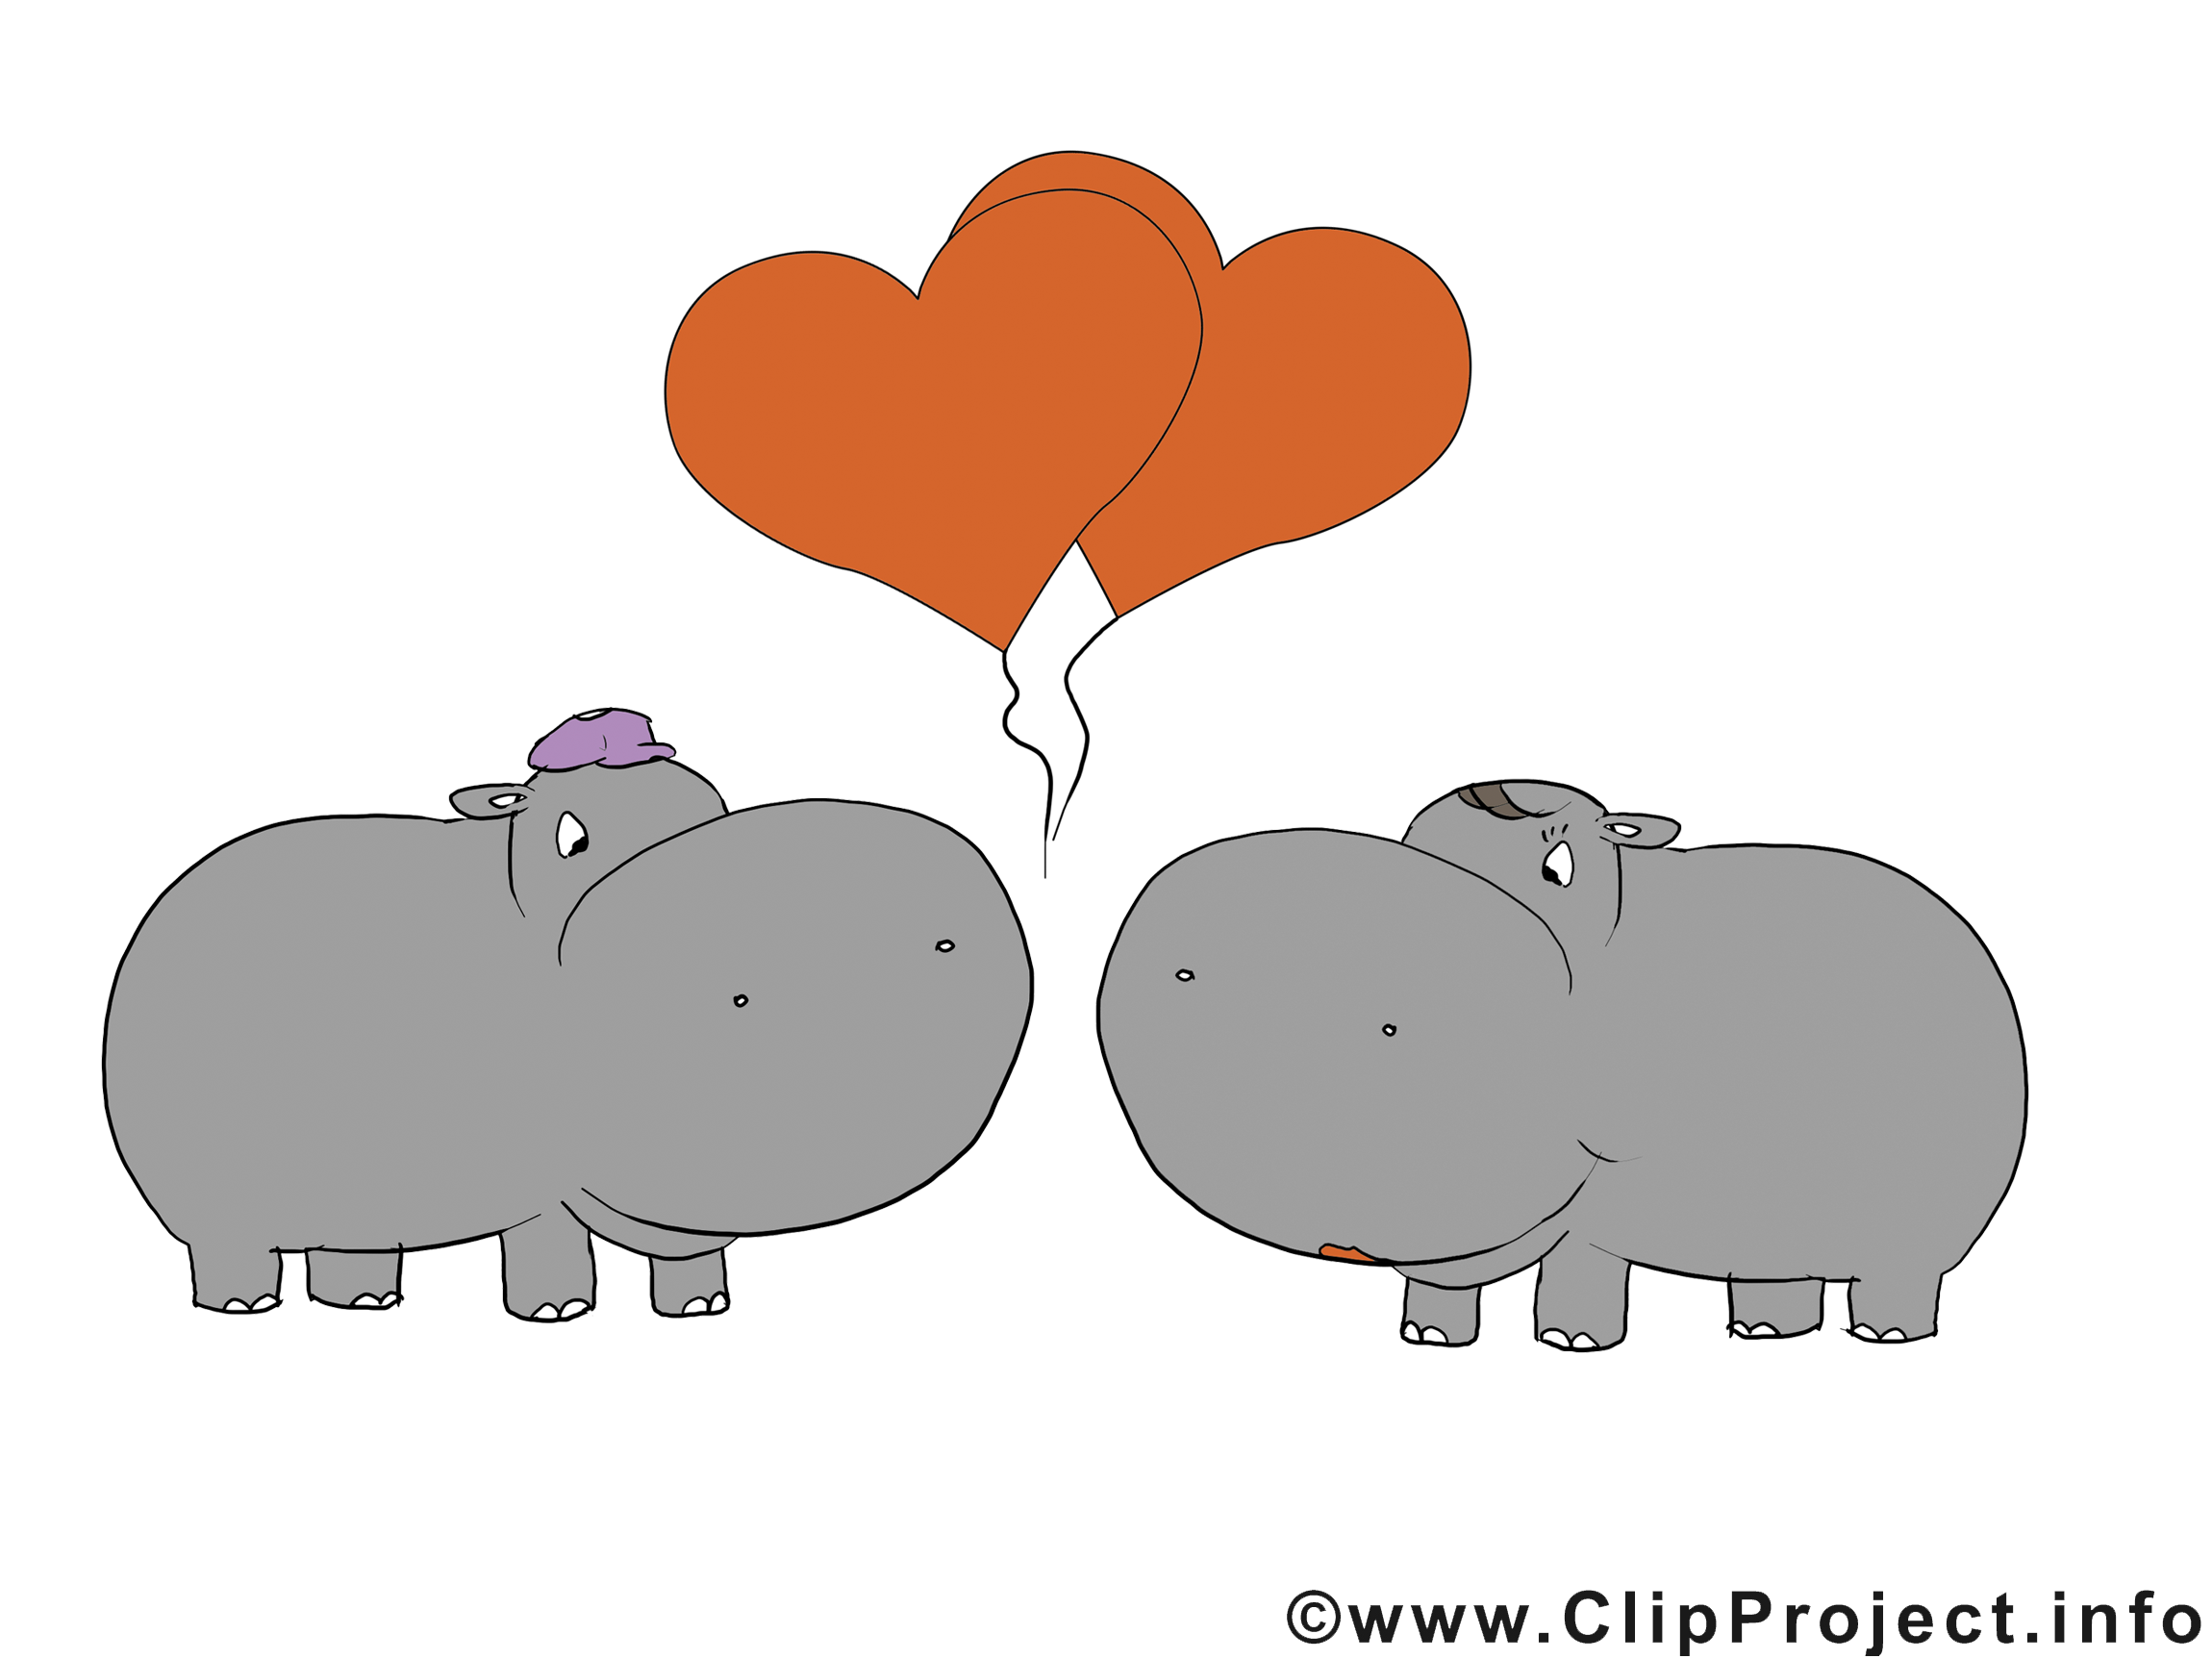 Hippopotames clip art – Saint-Valentin images